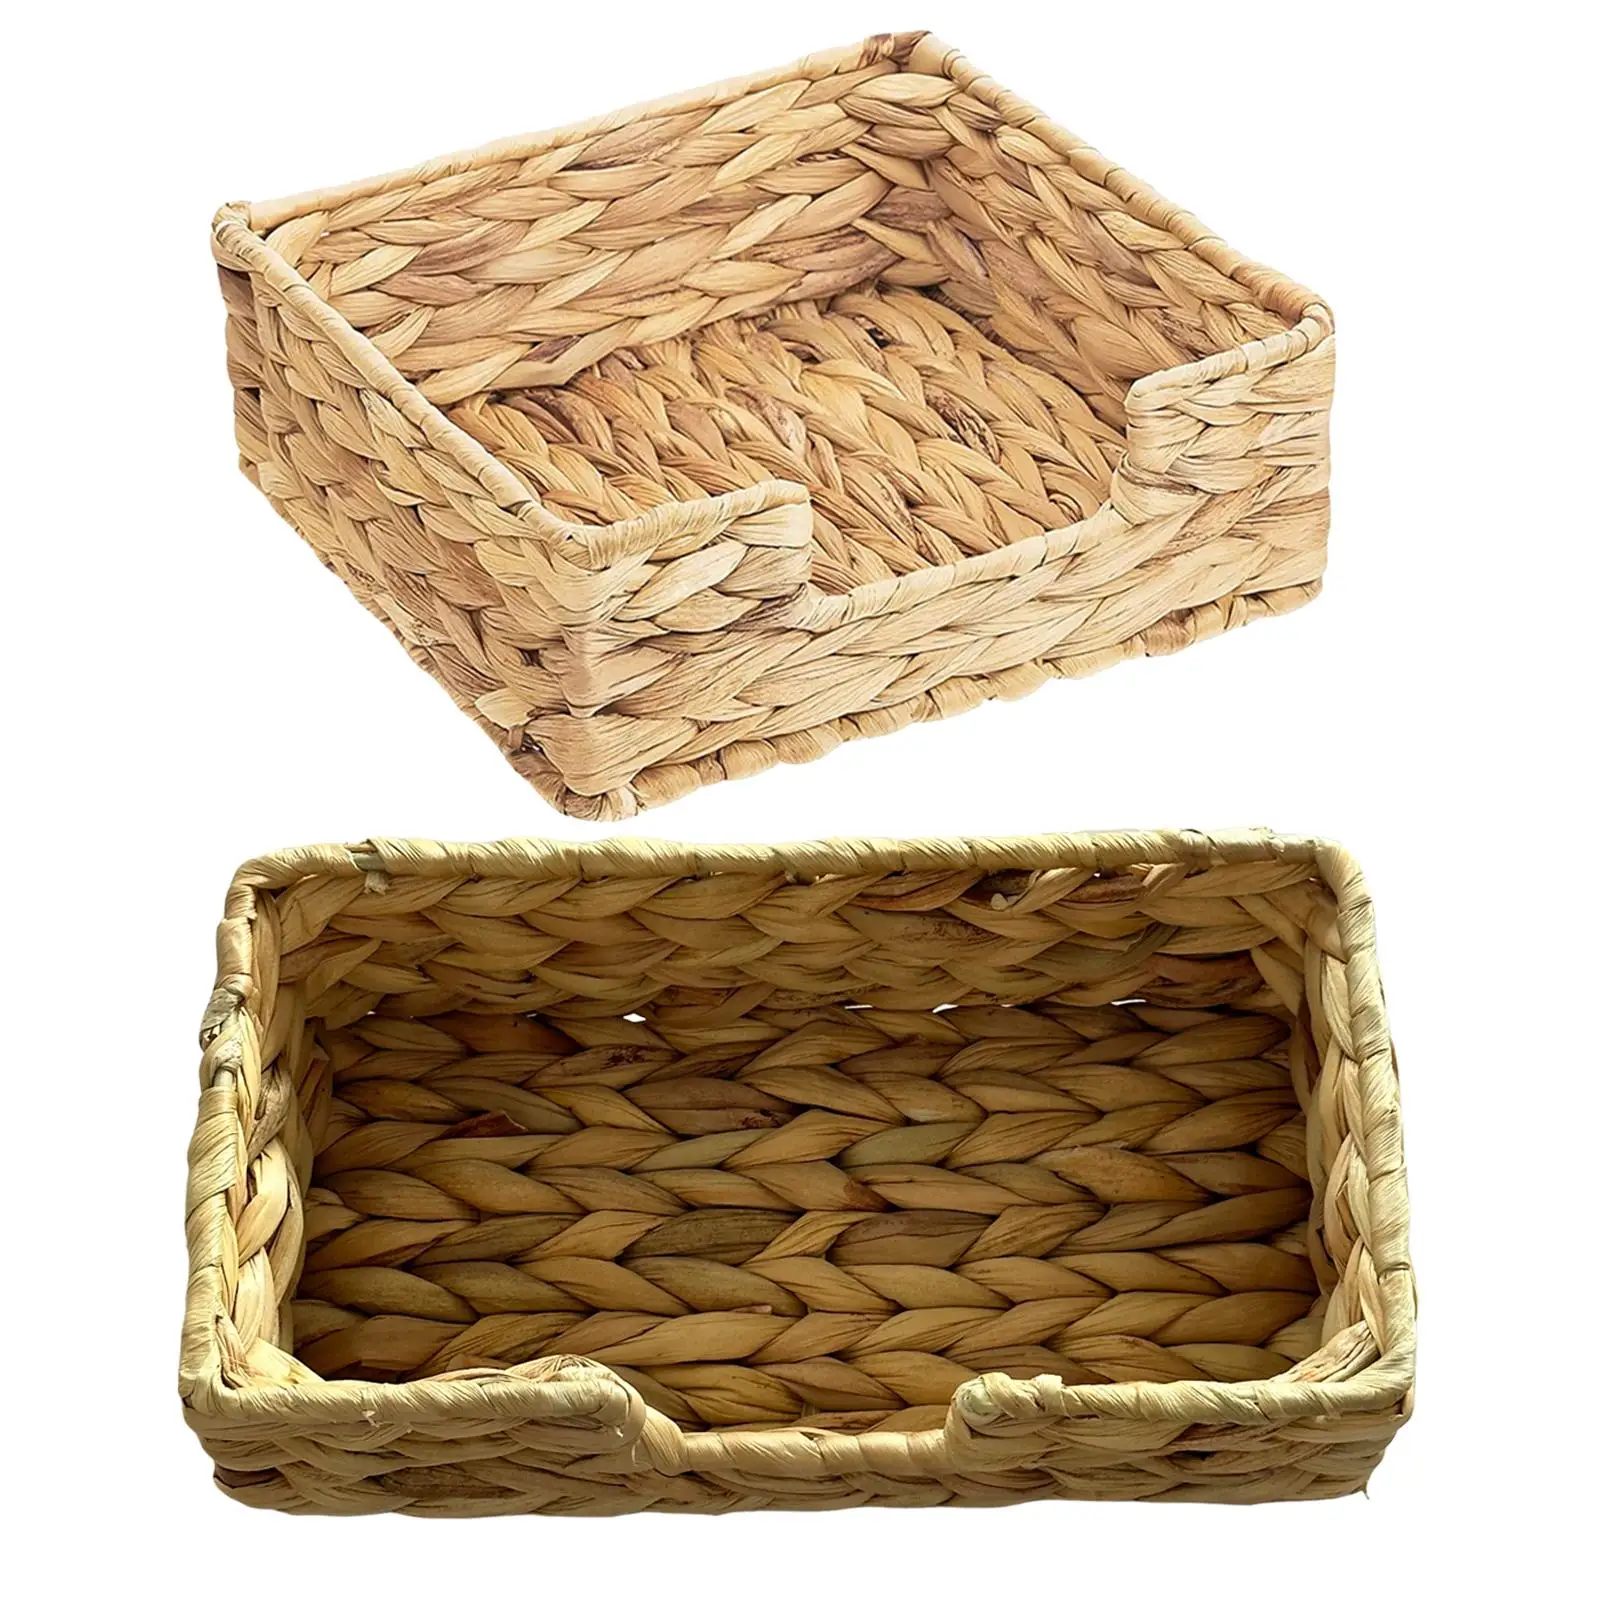 Wicker Woven Basket Toilet Paper Basket for Living Room Shelves Bedroom